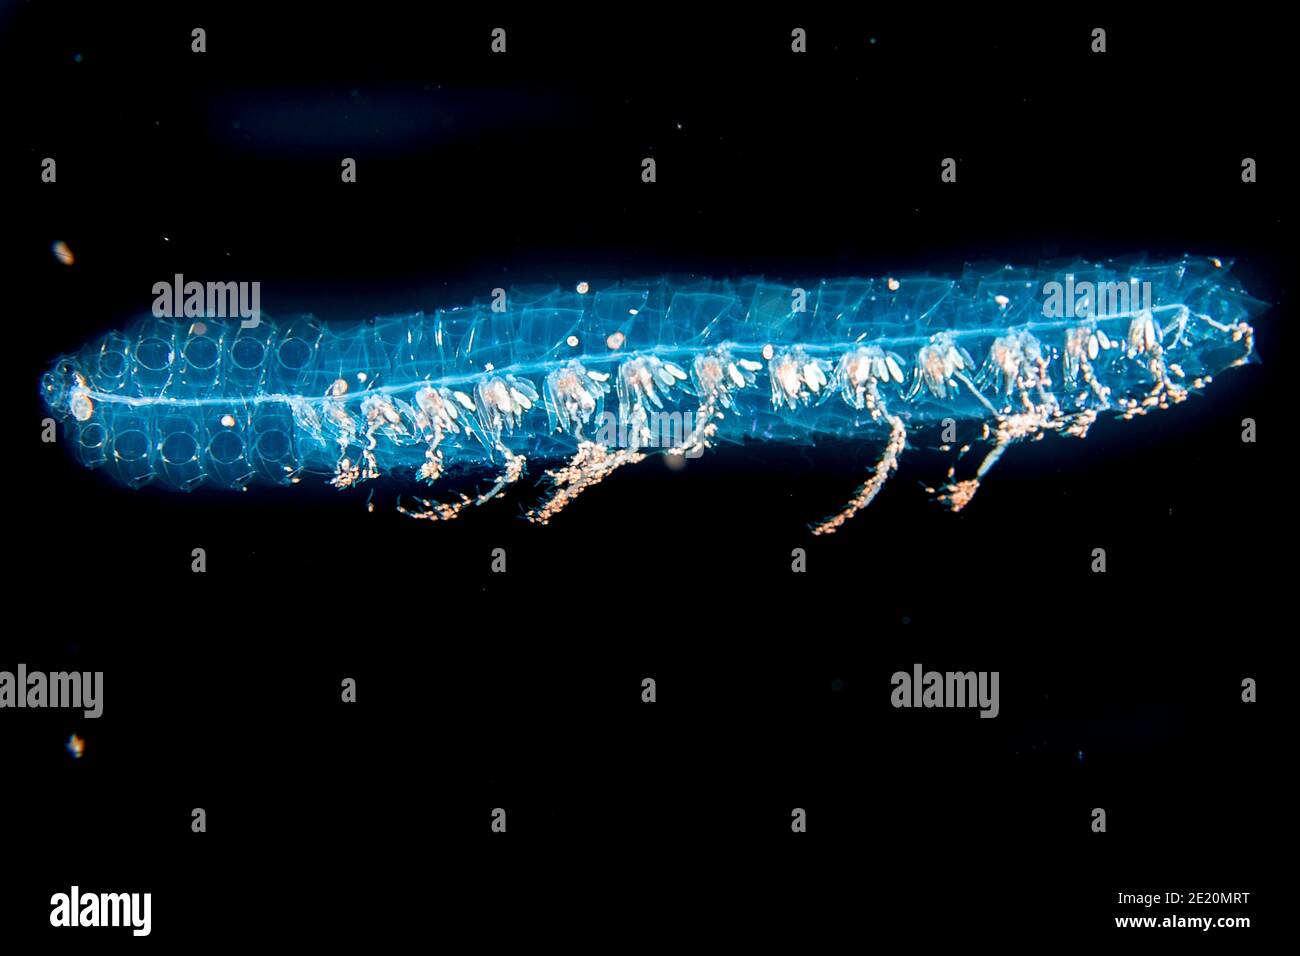 Un siphonophore ou l'hydrozoaire, Agalma okeni. Il s'agit d'un membre de la famille des animaux gélatineux appelé Cnidaires. Les tentacules en bas sont veino Banque D'Images